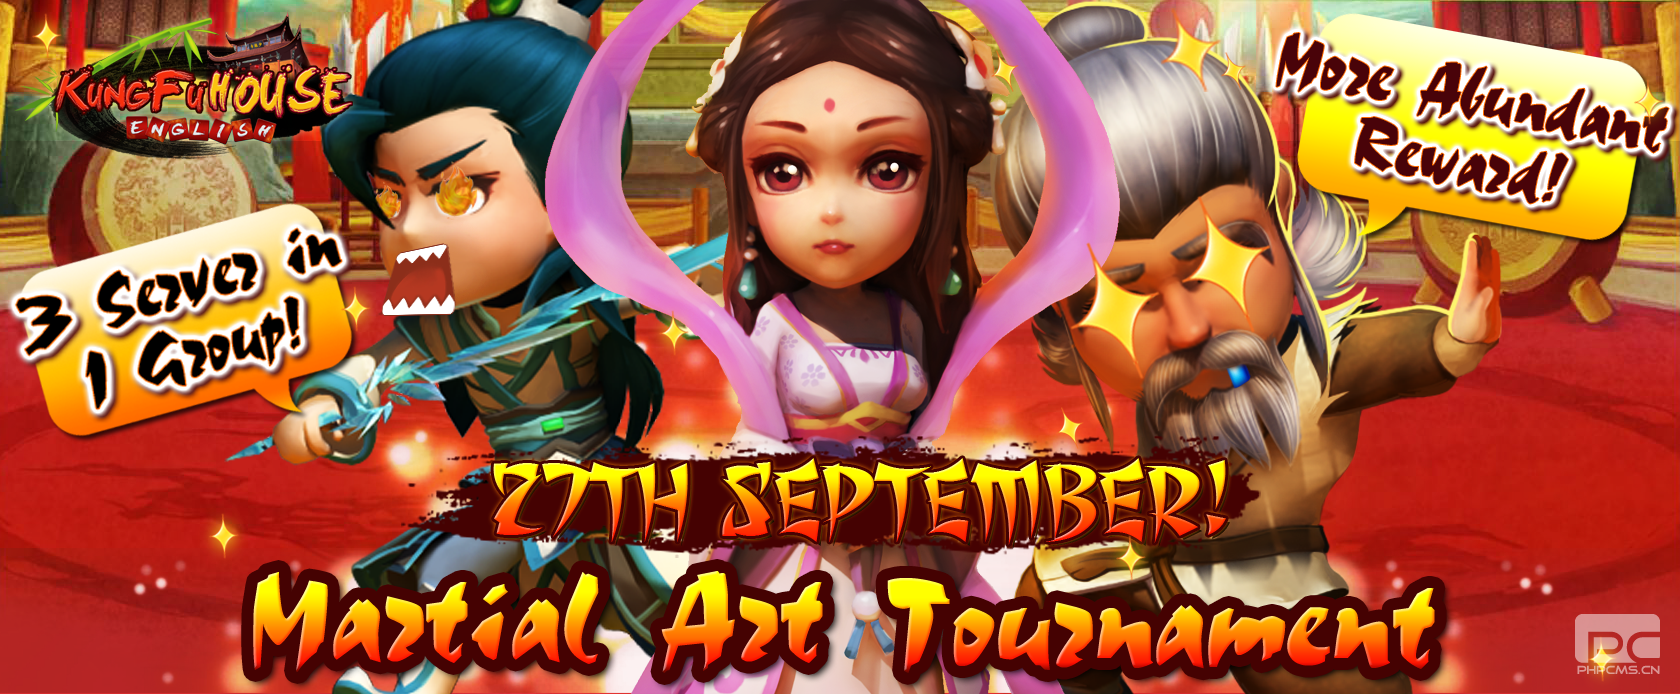 3rd Martial Art Tournament (27/9/2014)